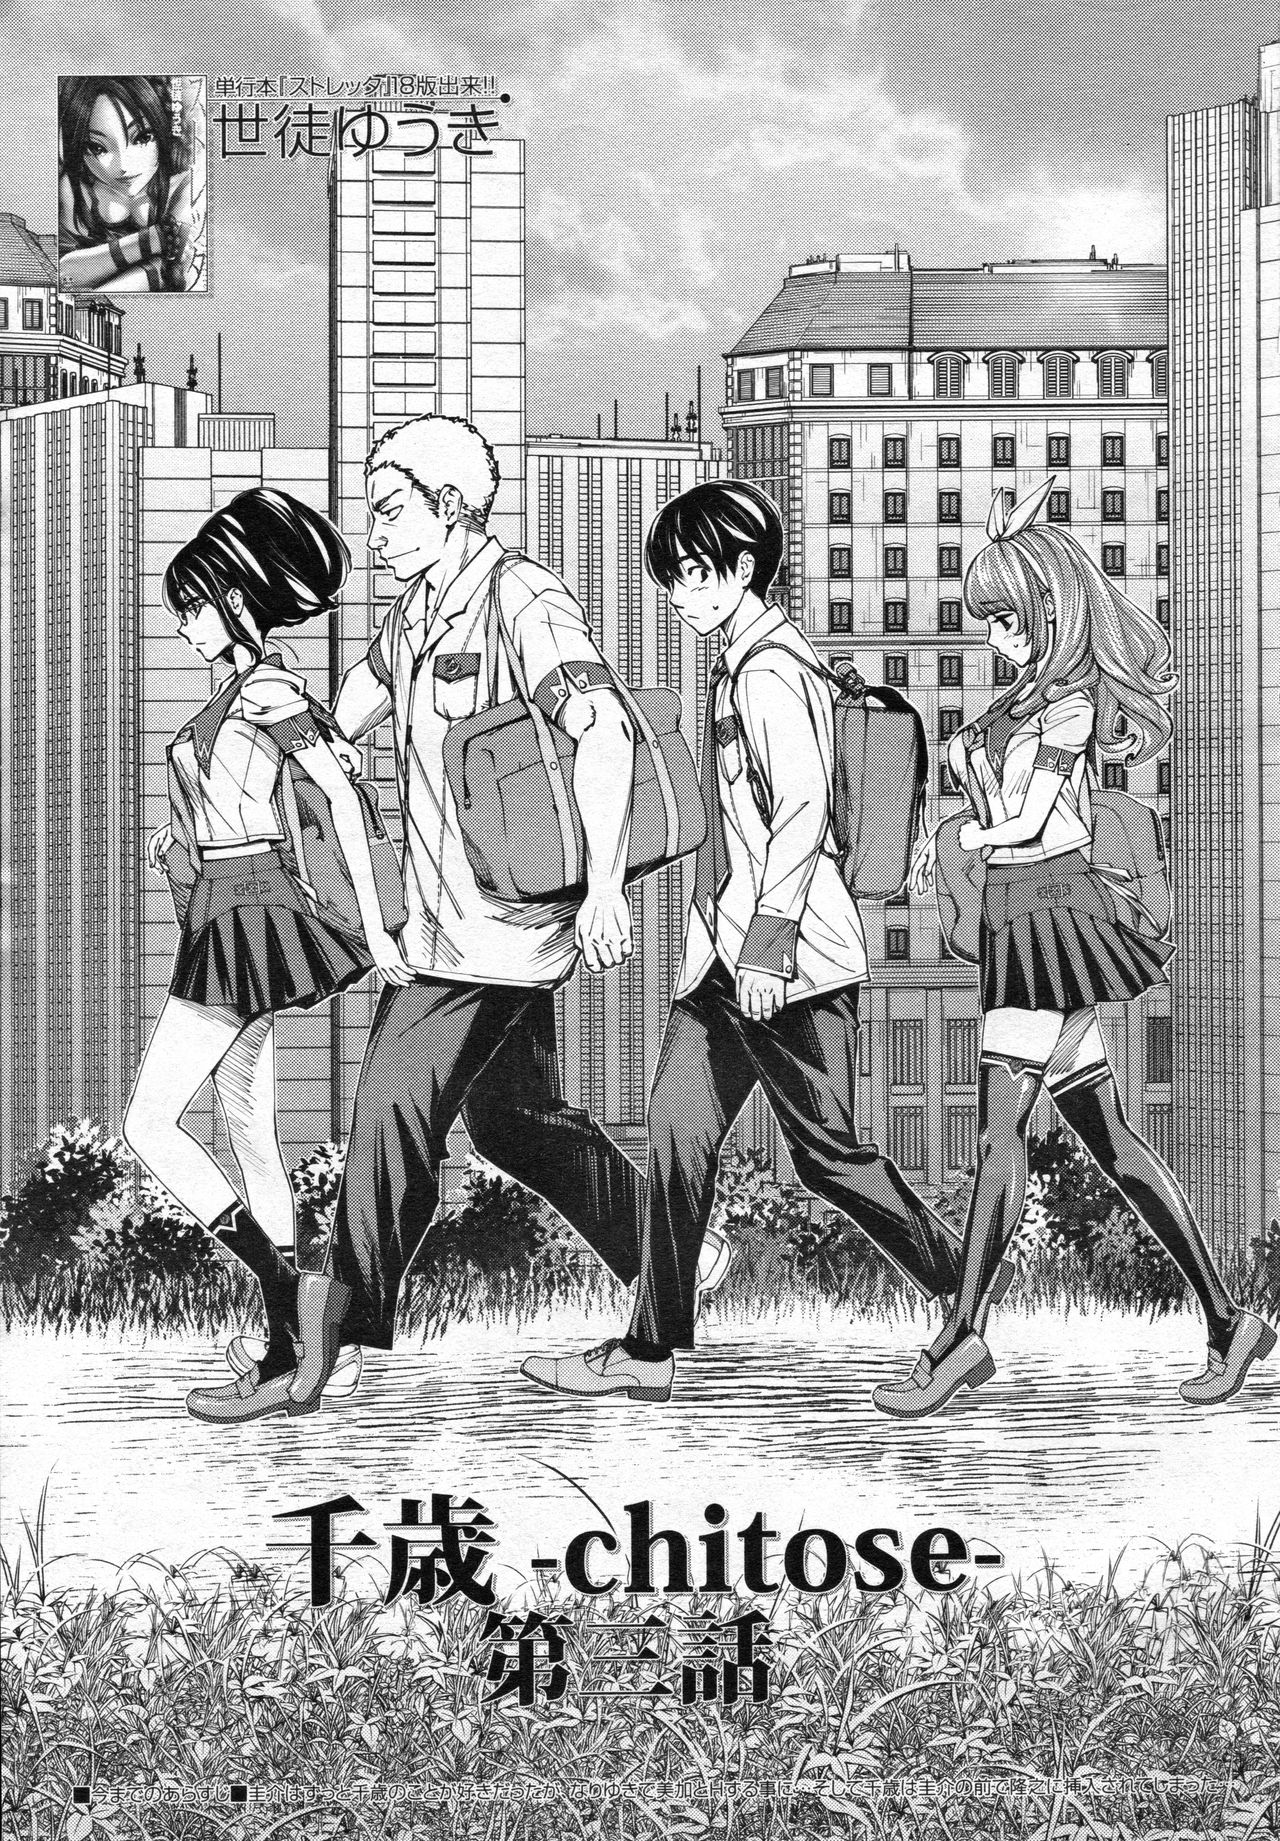 [世徒ゆうき] 千歳 -chitose- 第三話 (COMIC 夢幻転生 2020年3月號) - 情色卡漫 -